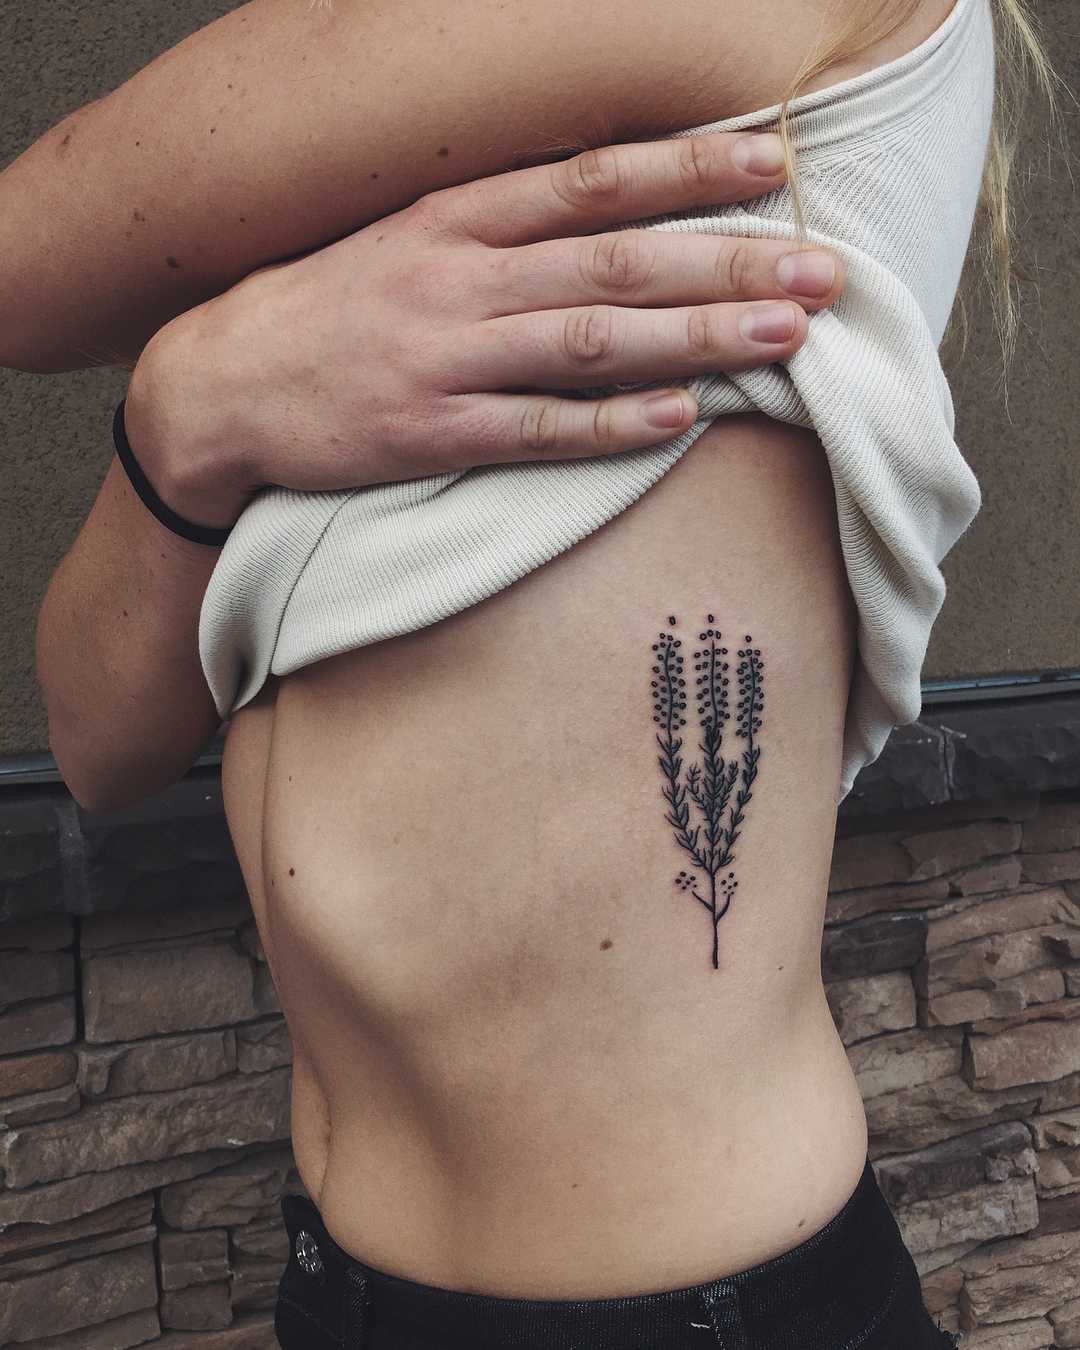 Beautiful plant tattoo on the rib